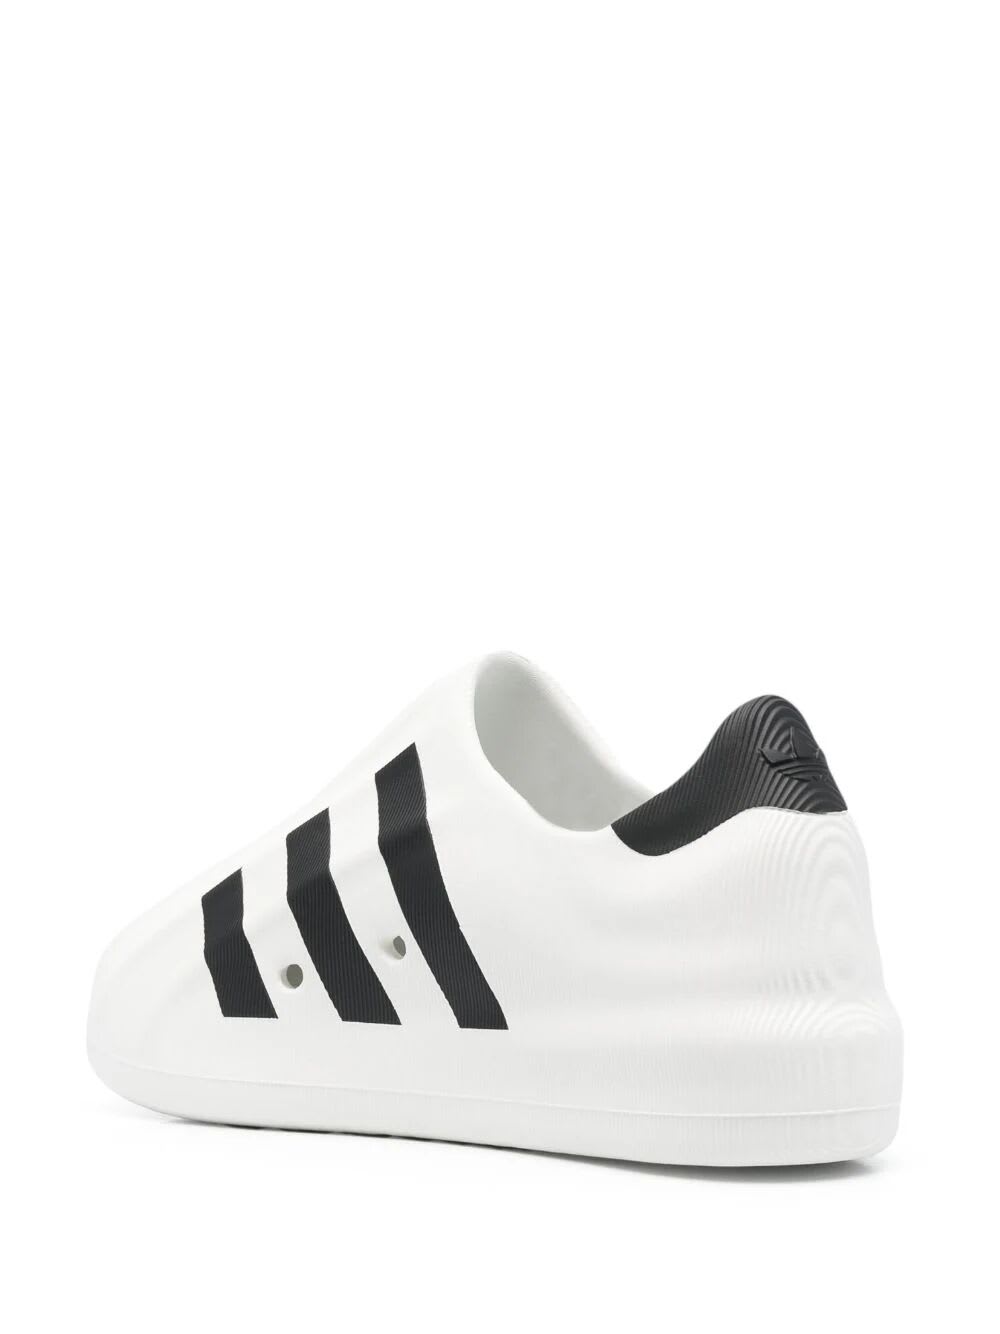 Shop Adidas Originals Adifom Superstar Sneakers In Cwhite Cblack Cblack